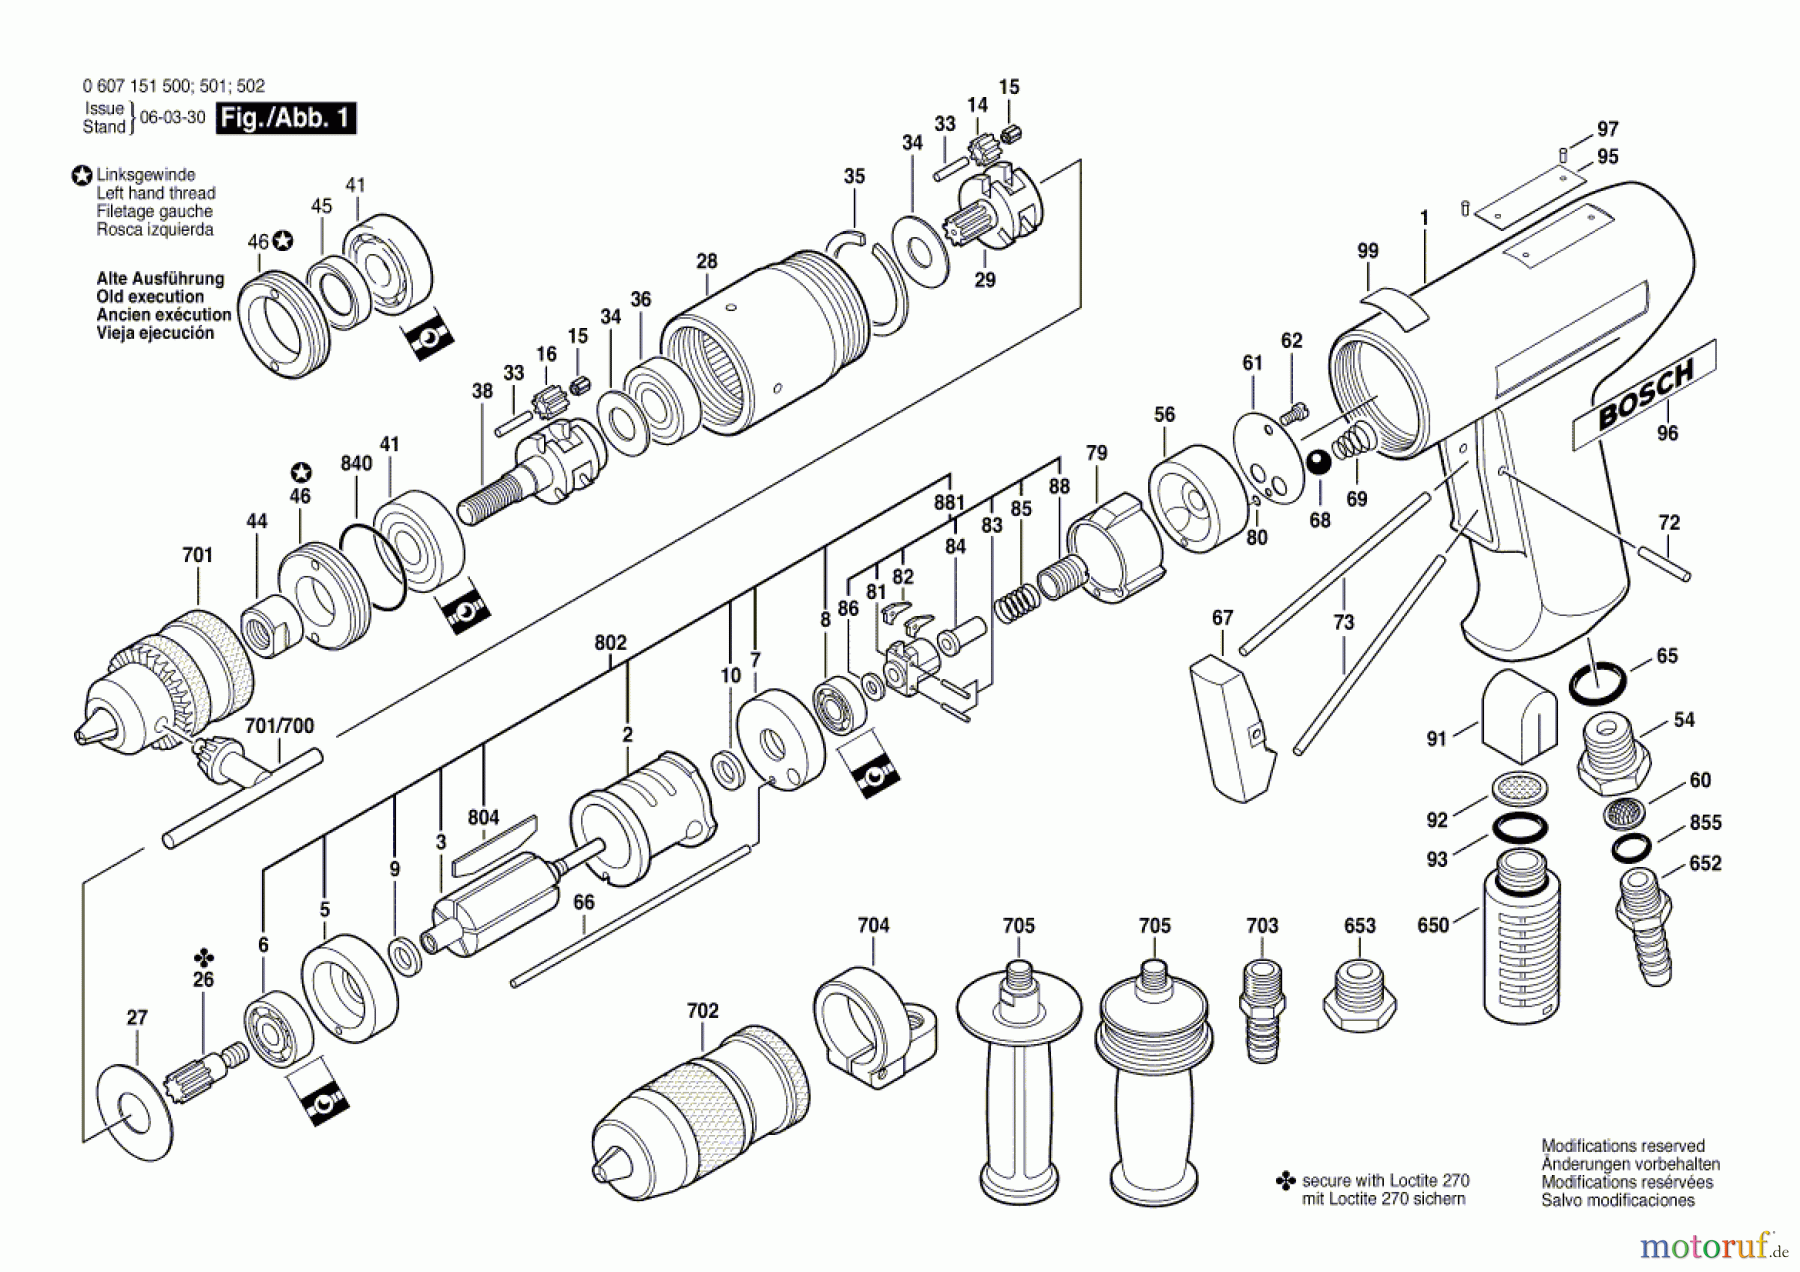  Bosch Werkzeug Bohrmaschine 370 WATT-SERIE Seite 1